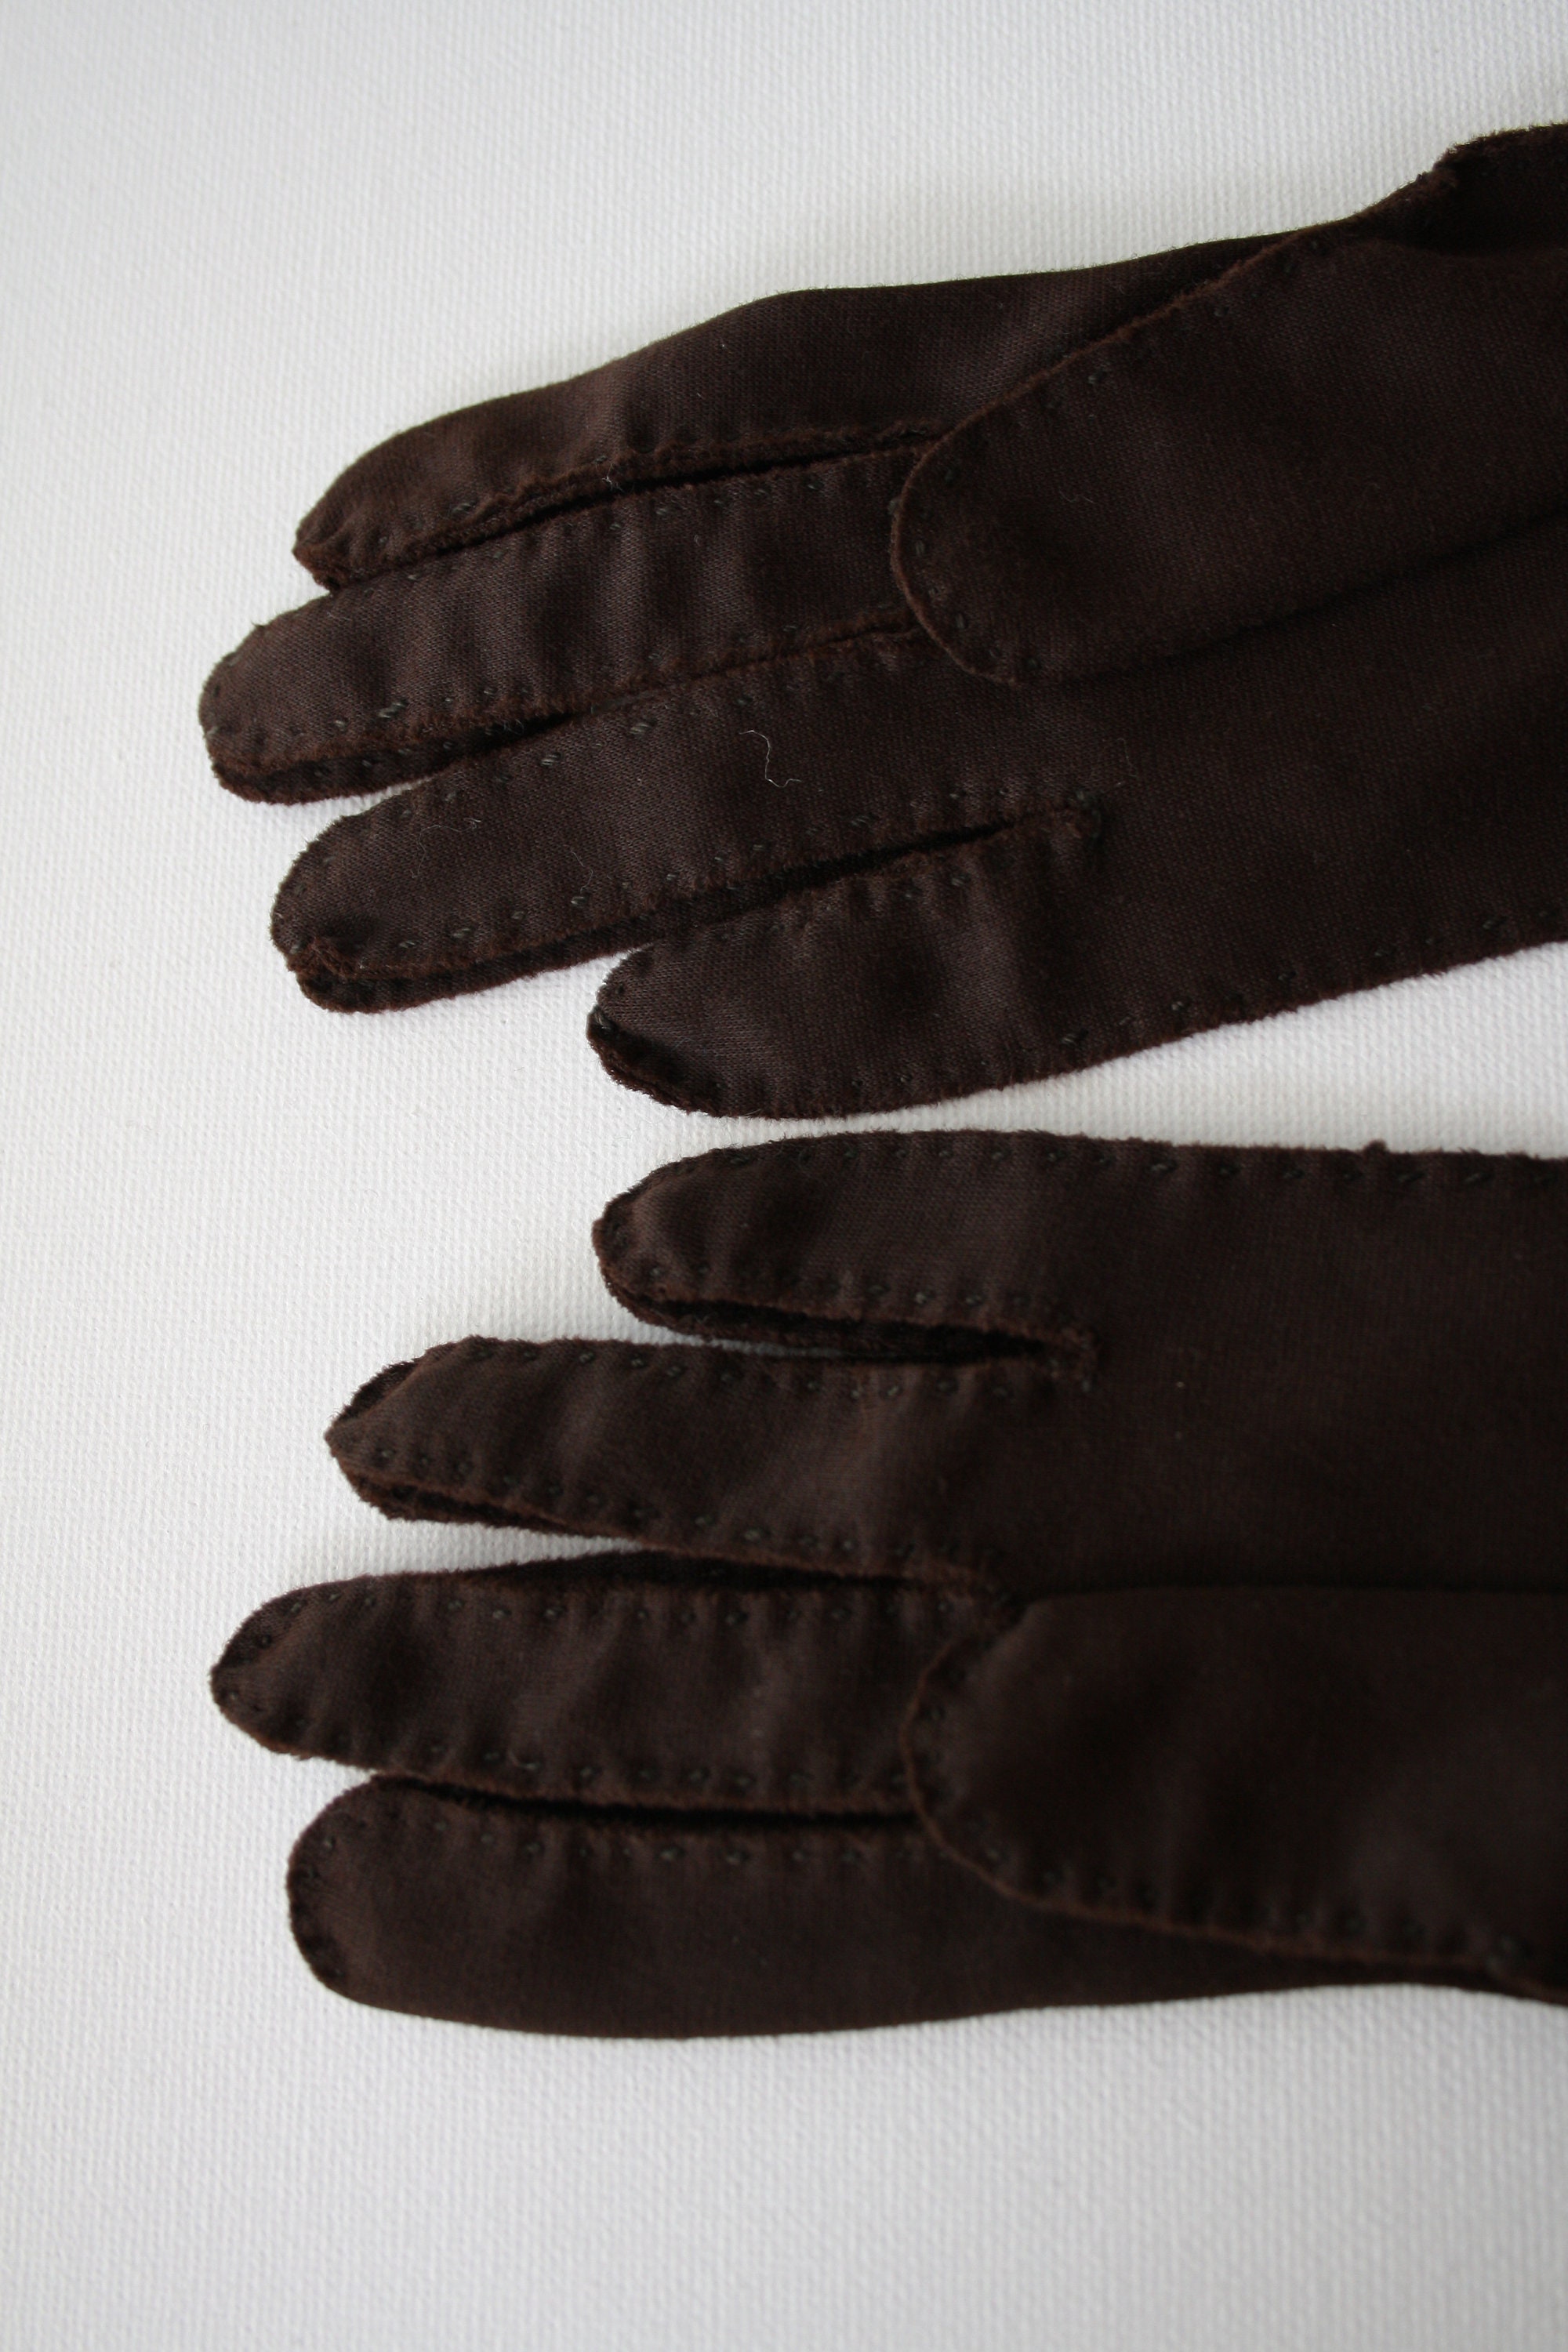 Dark Brown Gloves Women's size 6 1/2 Vintage gloves | Etsy